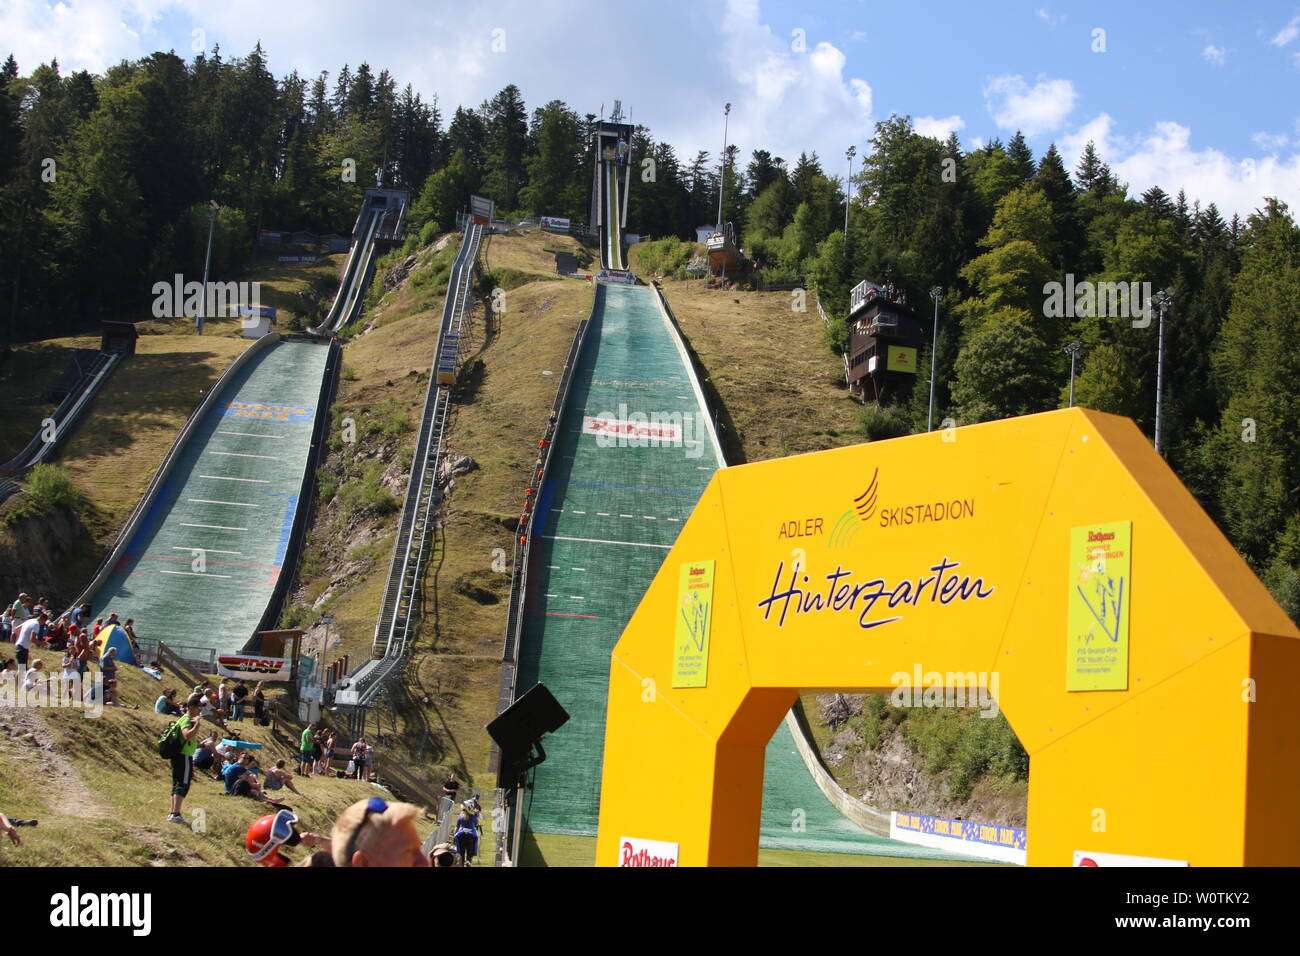 Das Adler Skistadion von Hinterzarten, Austragungsort des Teamwettkampf Skisprung DM 2018 Hinterzarten Foto de stock